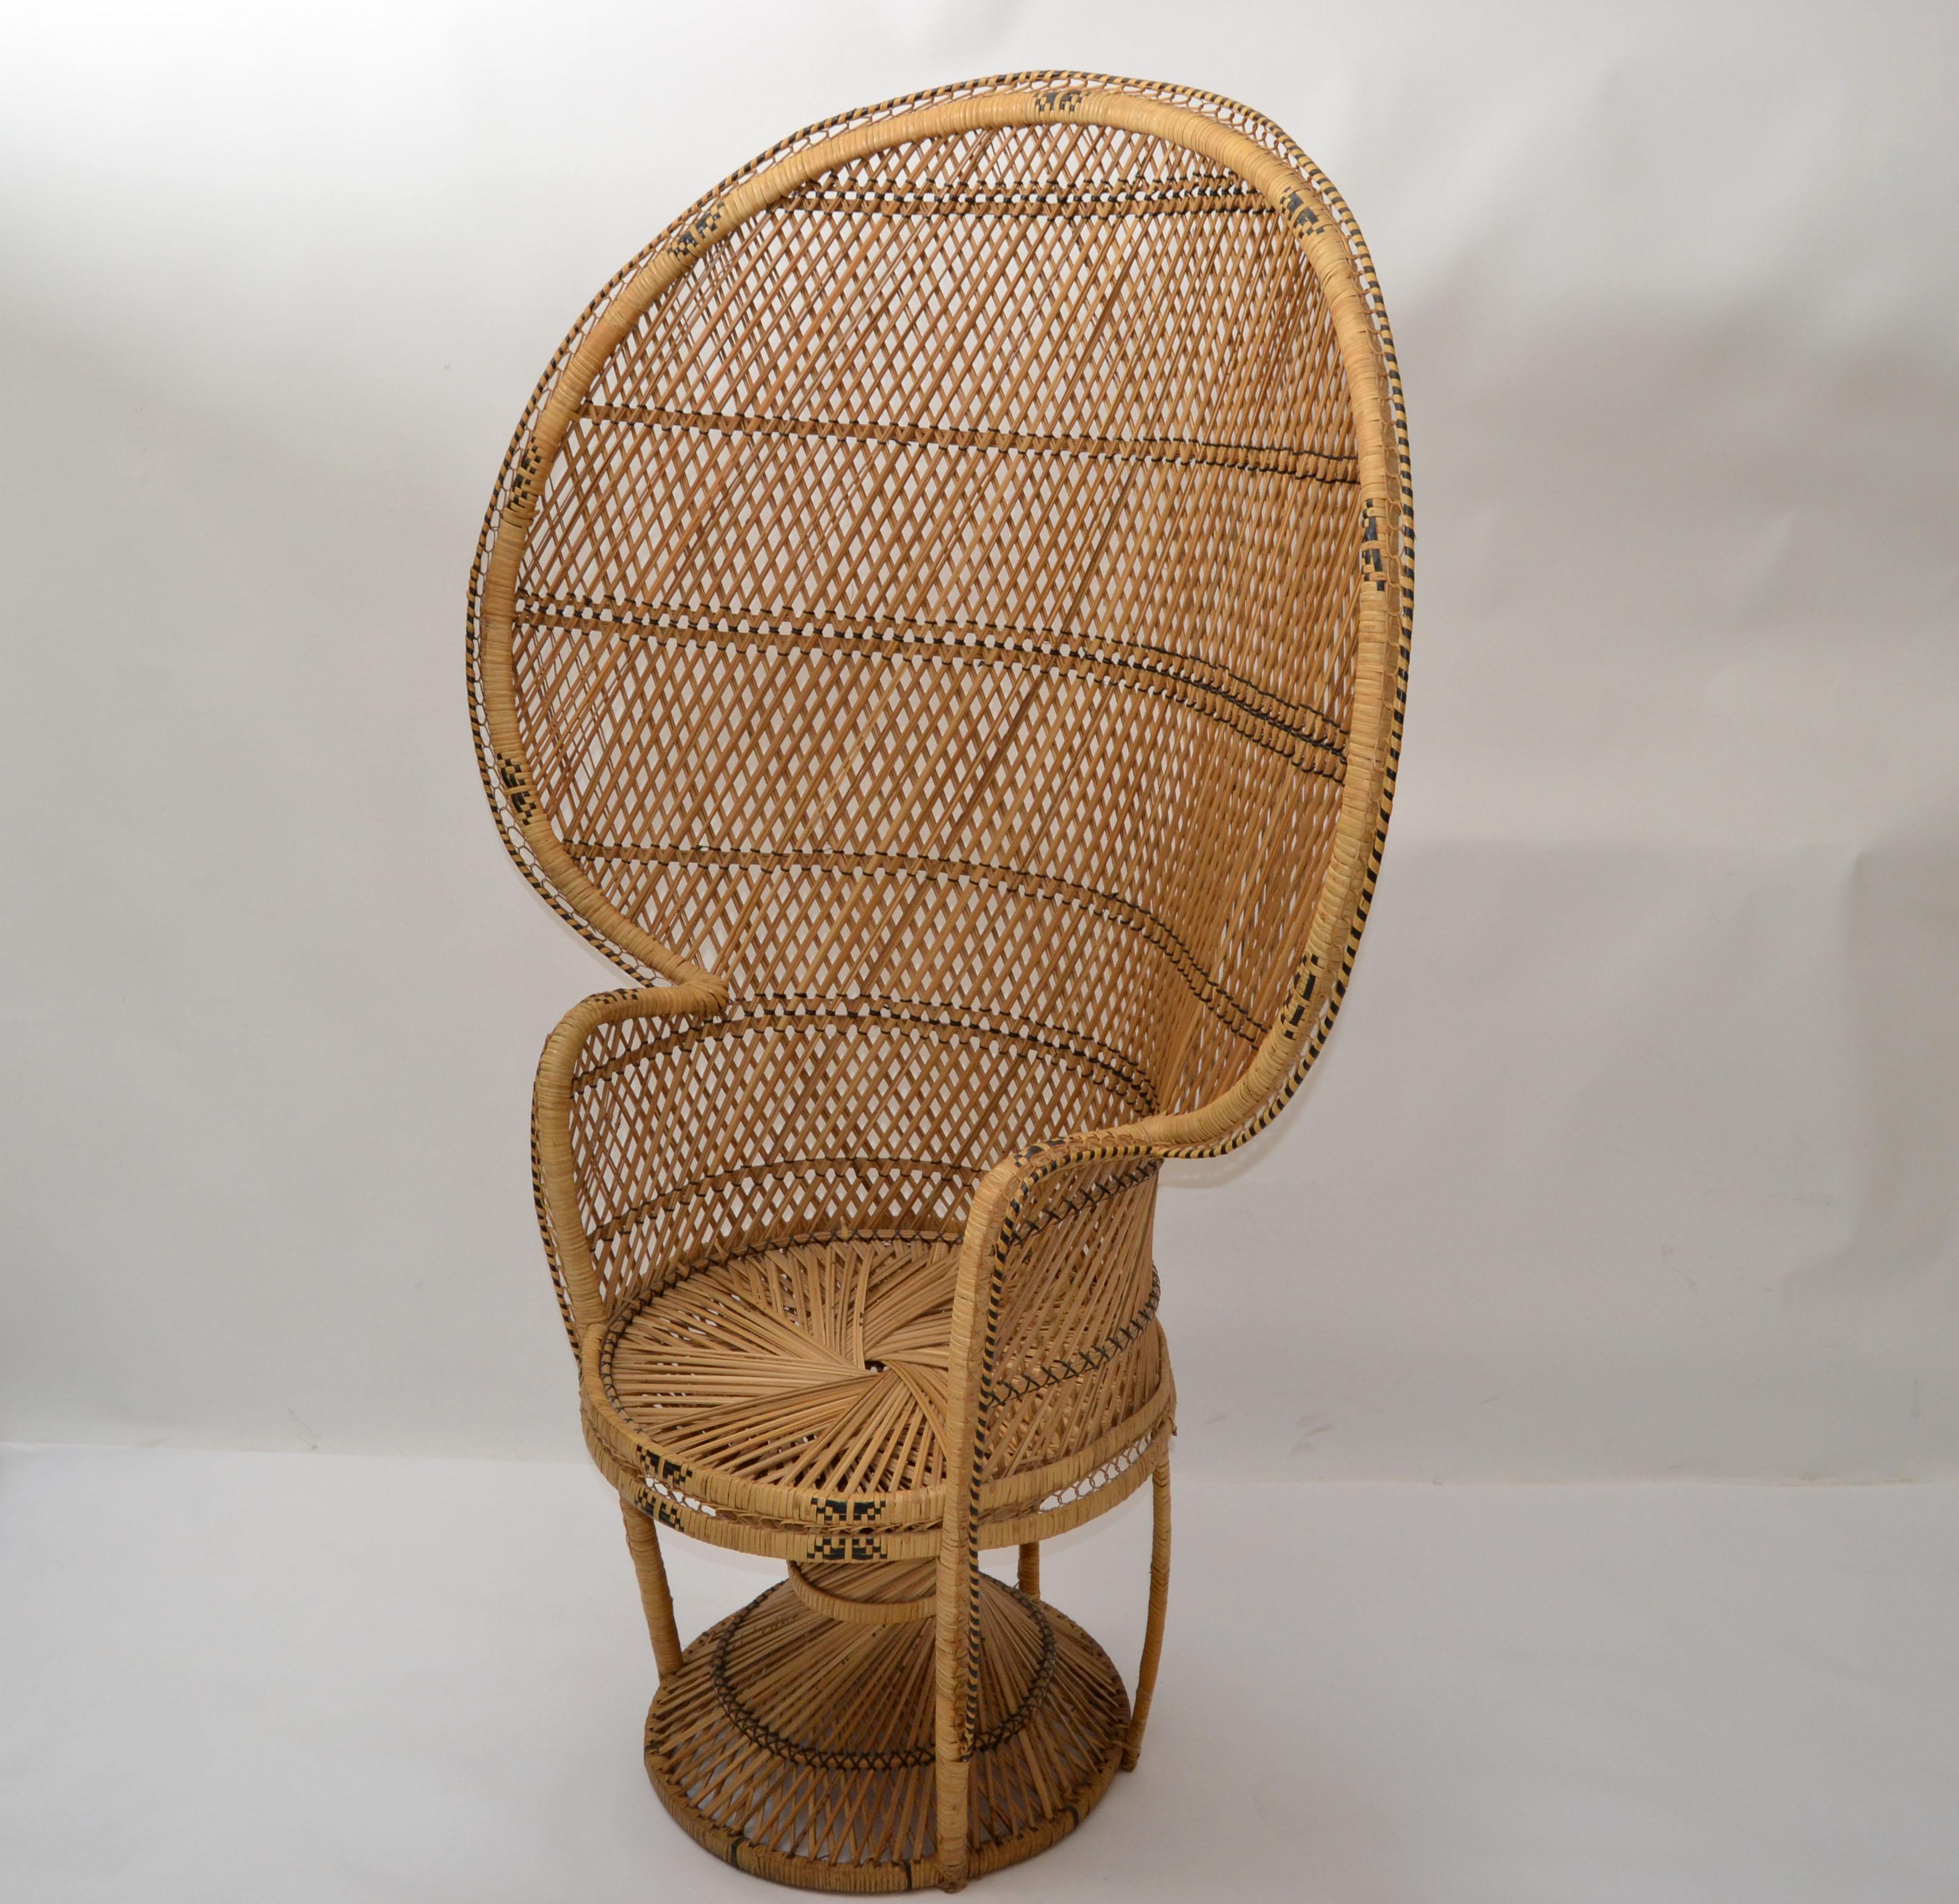 Superbe chaise paon vintage Boho Chic beige et noir tissée à la main dans les années 1970.
Veuillez noter les détails et les différentes techniques de cette chaise. 
Fabriqué en osier, en rotin et en roseau.
Idéal pour un usage intérieur et